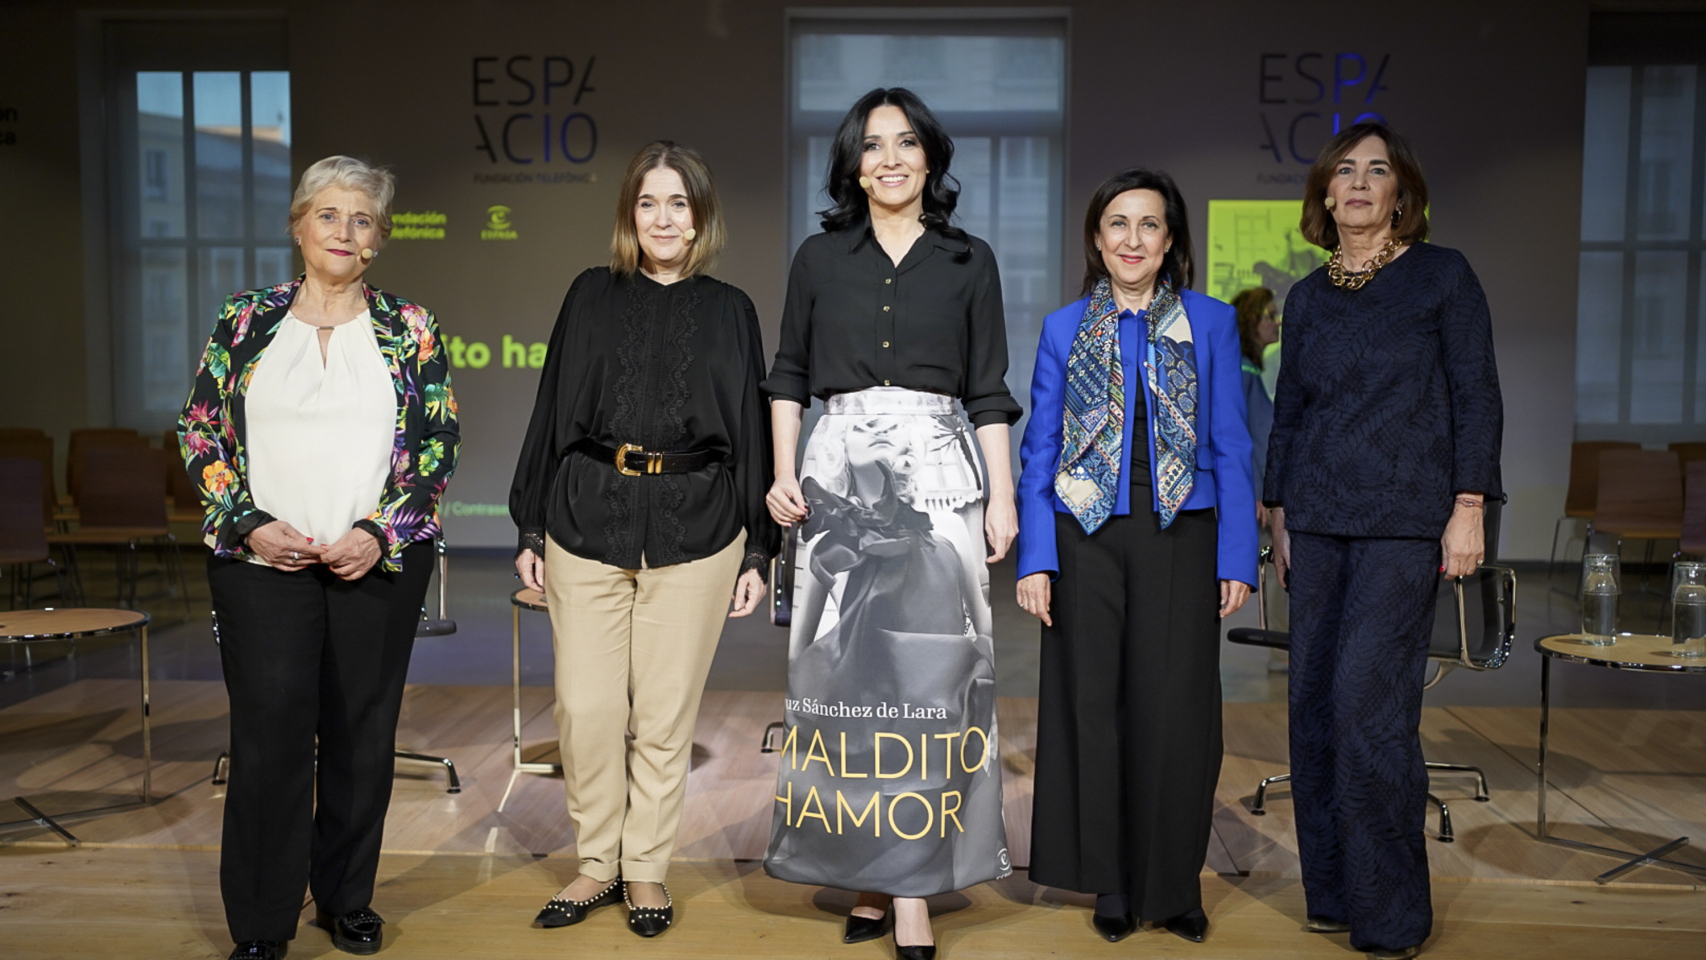 Así fue la presentación de la segunda novela de Cruz Sánchez de Lara, 'Maldito Hamor', en la Fundación Telefónica